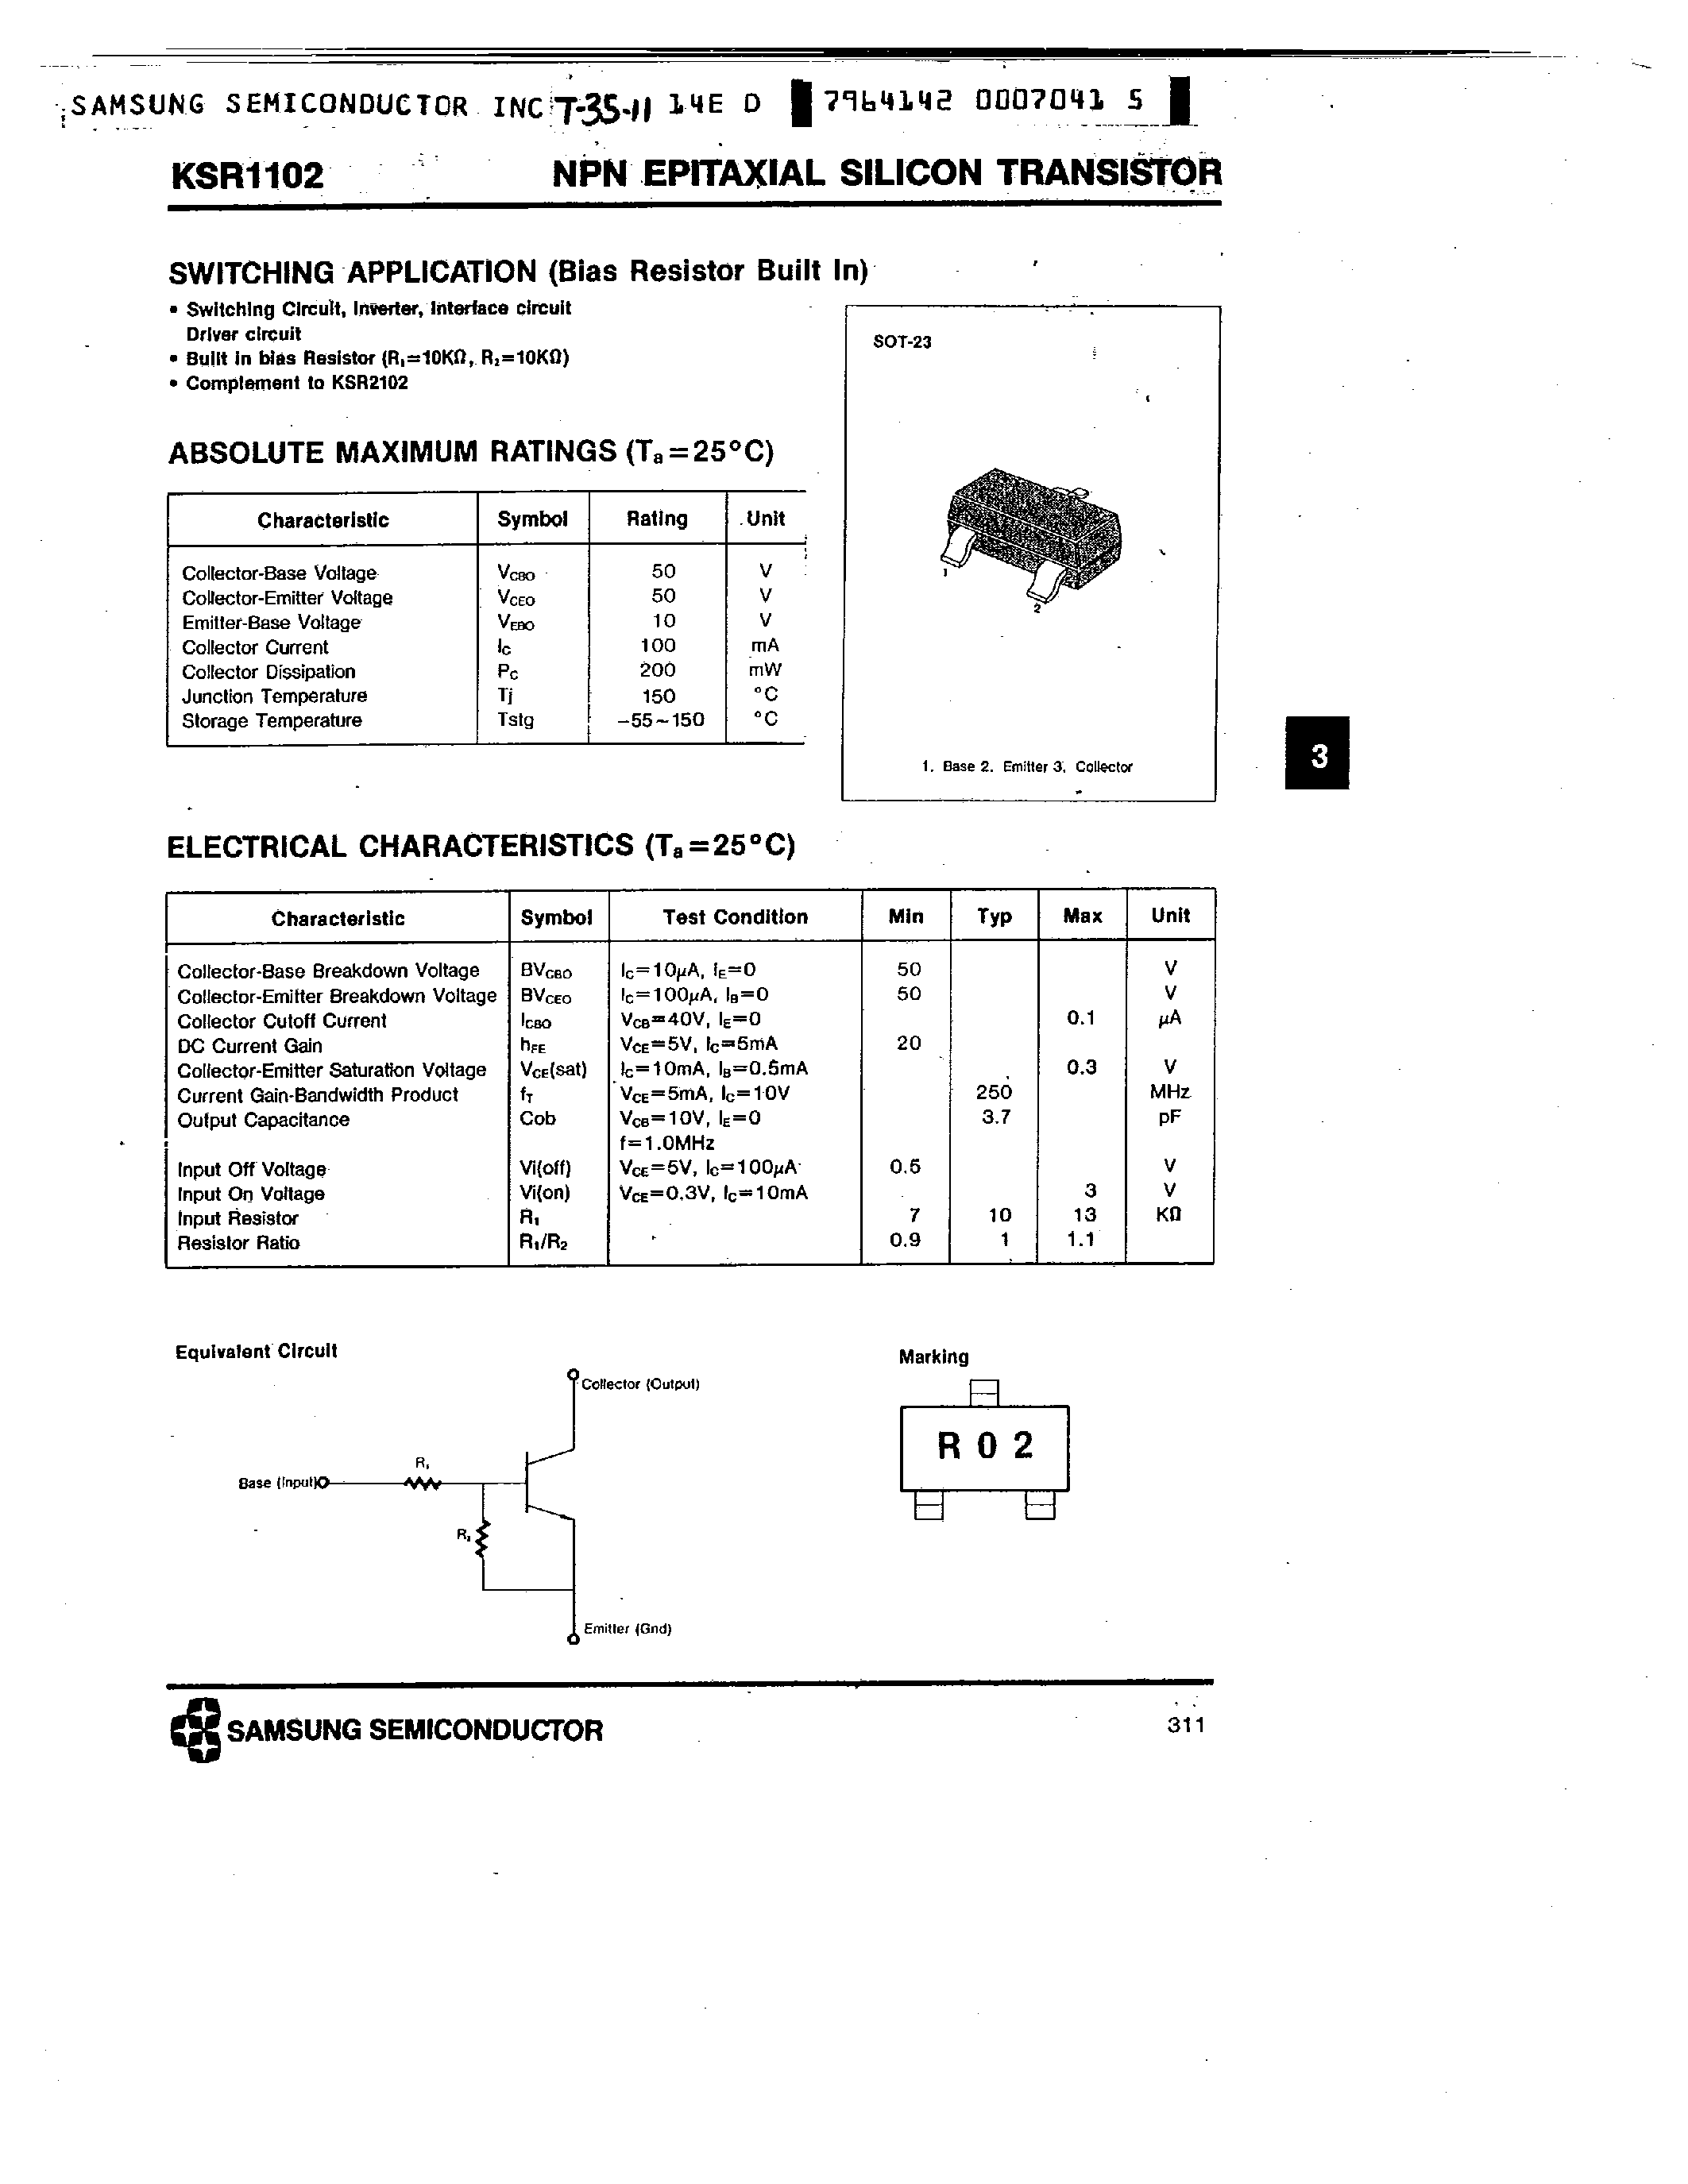 Datasheet KSR1102 - NPN (SWITCHING APPLICATION) page 1